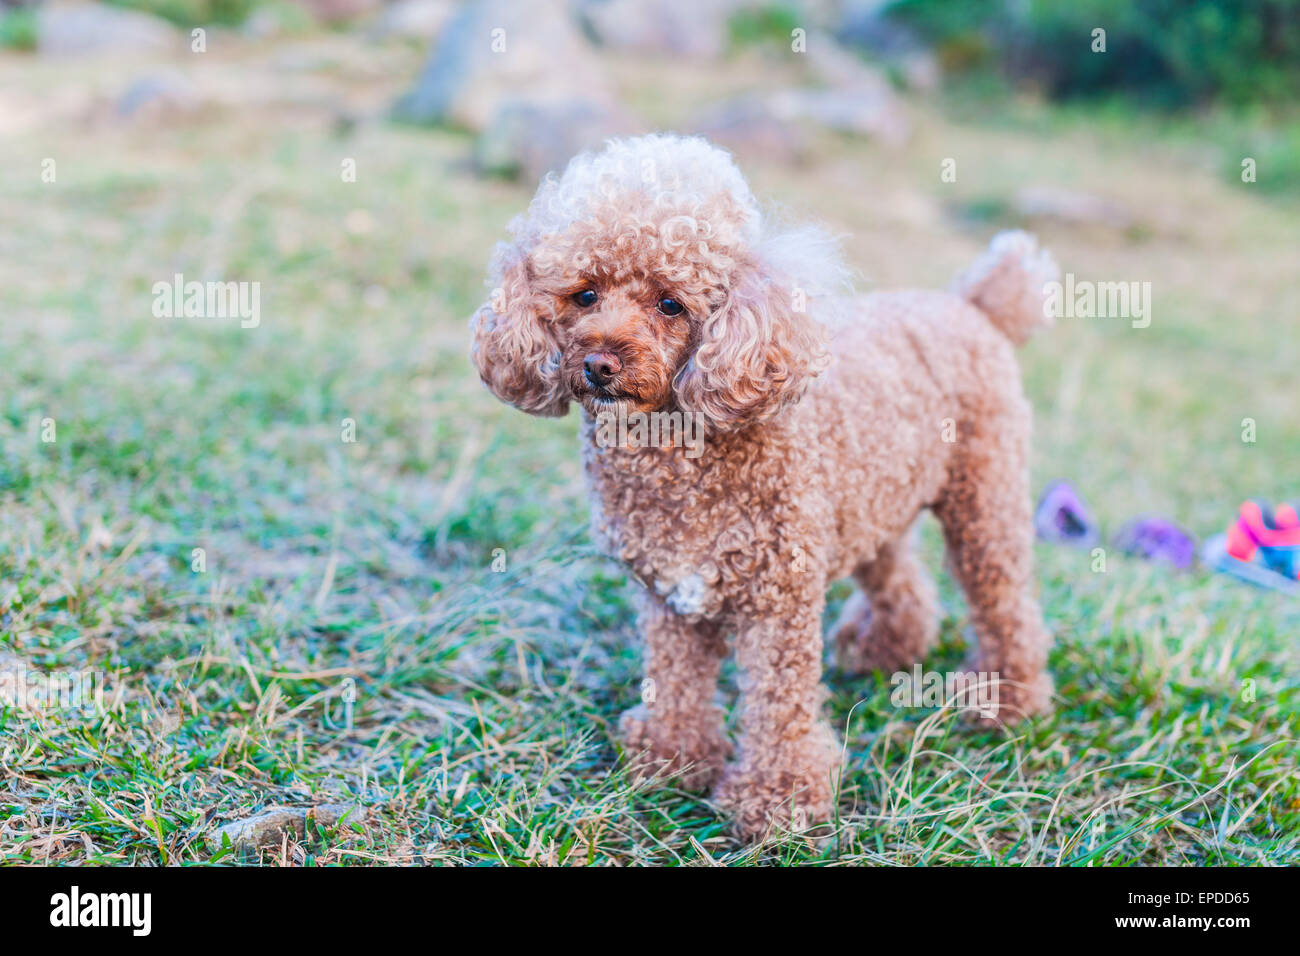 Les jeunes poodle standing on the grass Banque D'Images